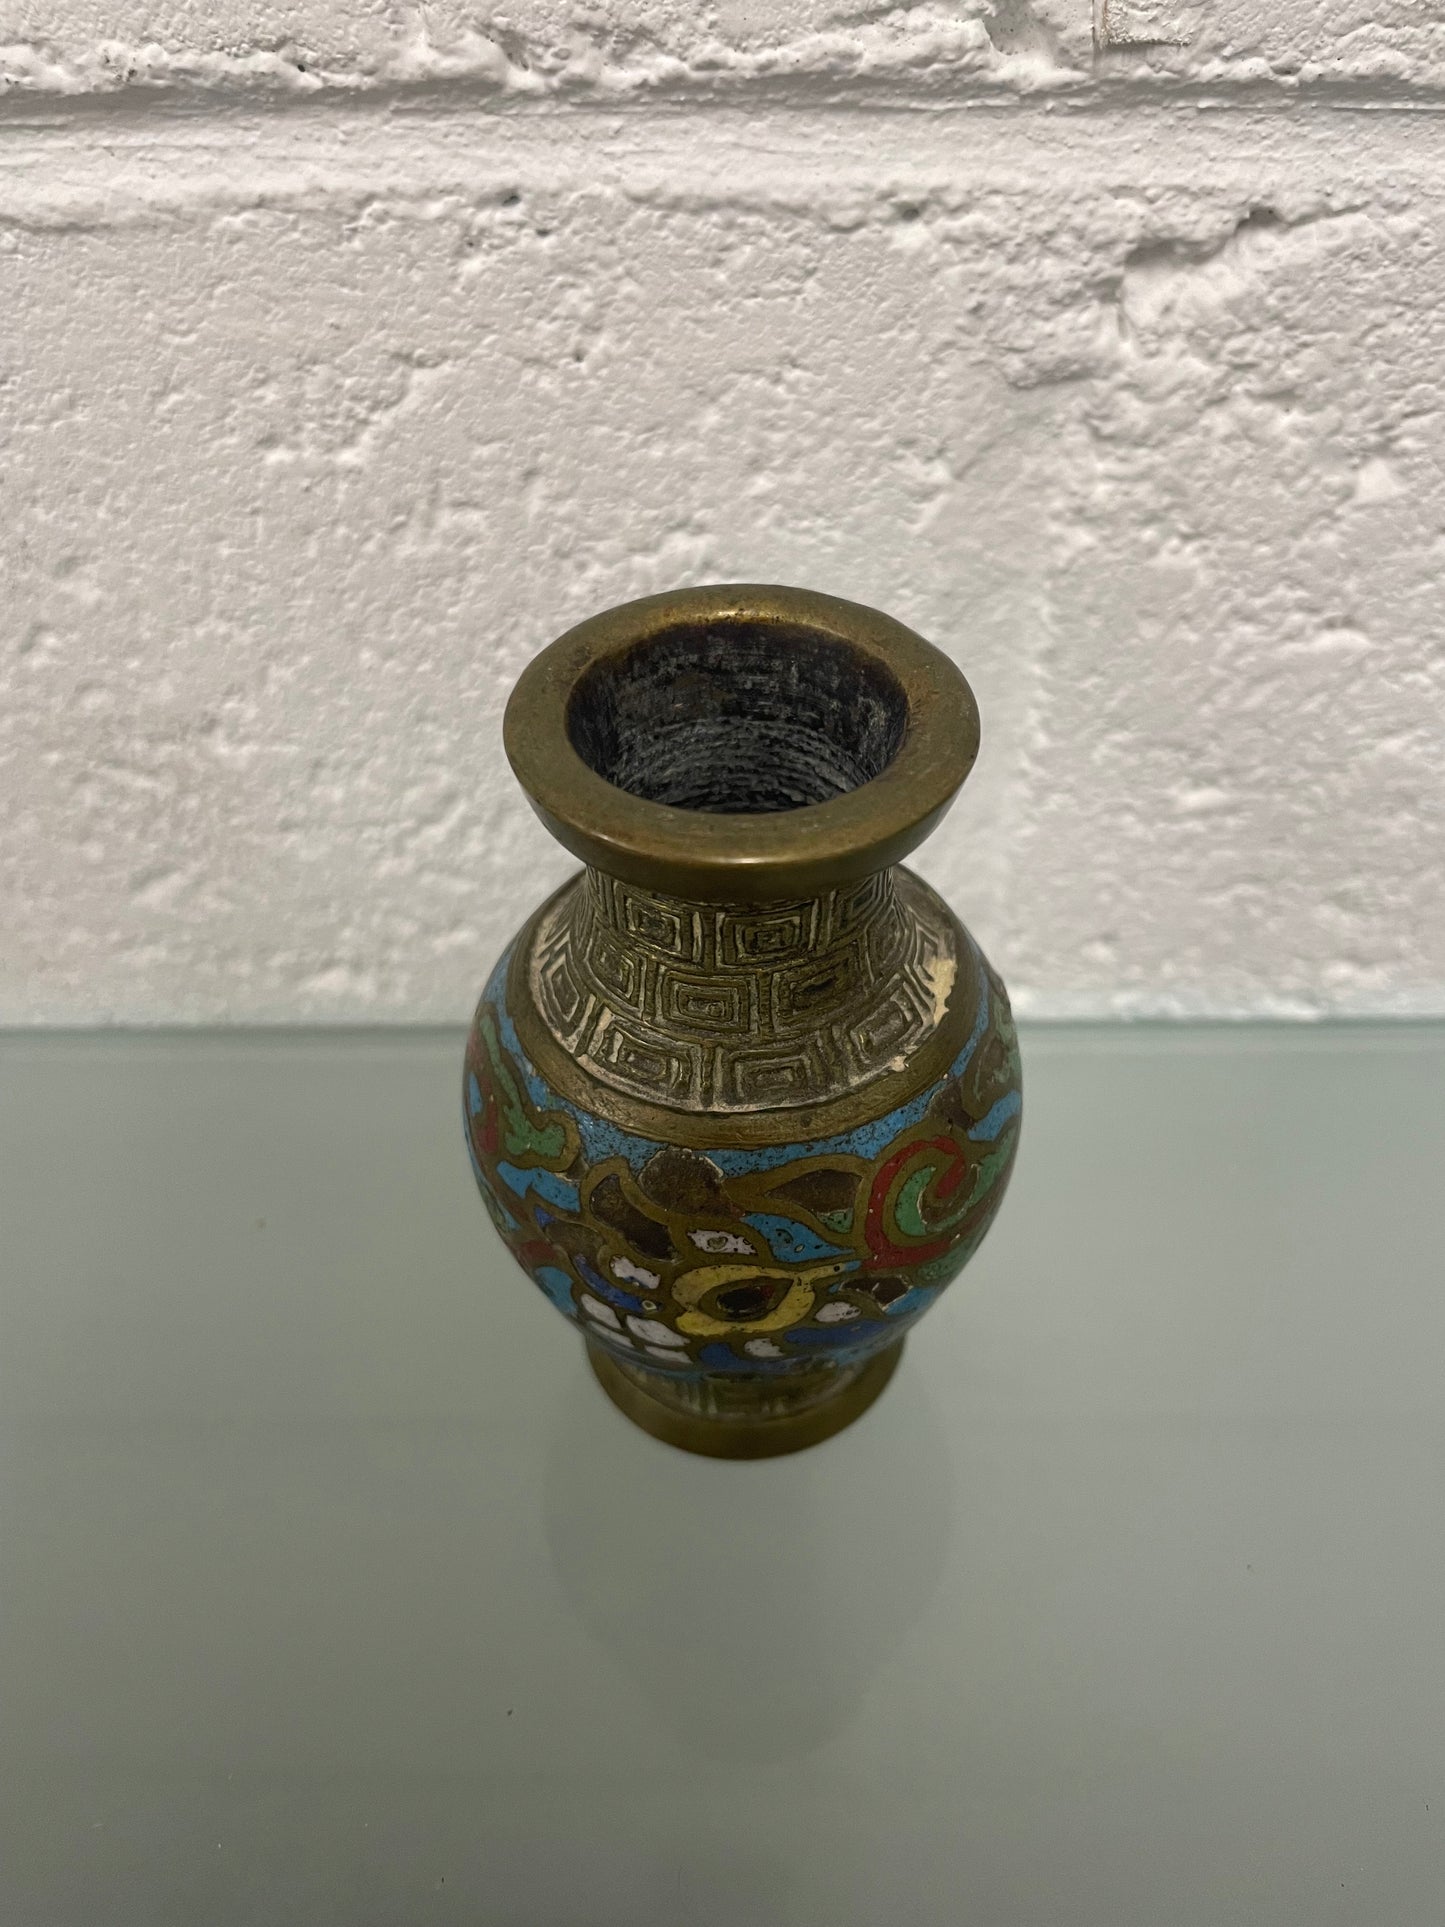 Antique Miniature Cloisonné Vase